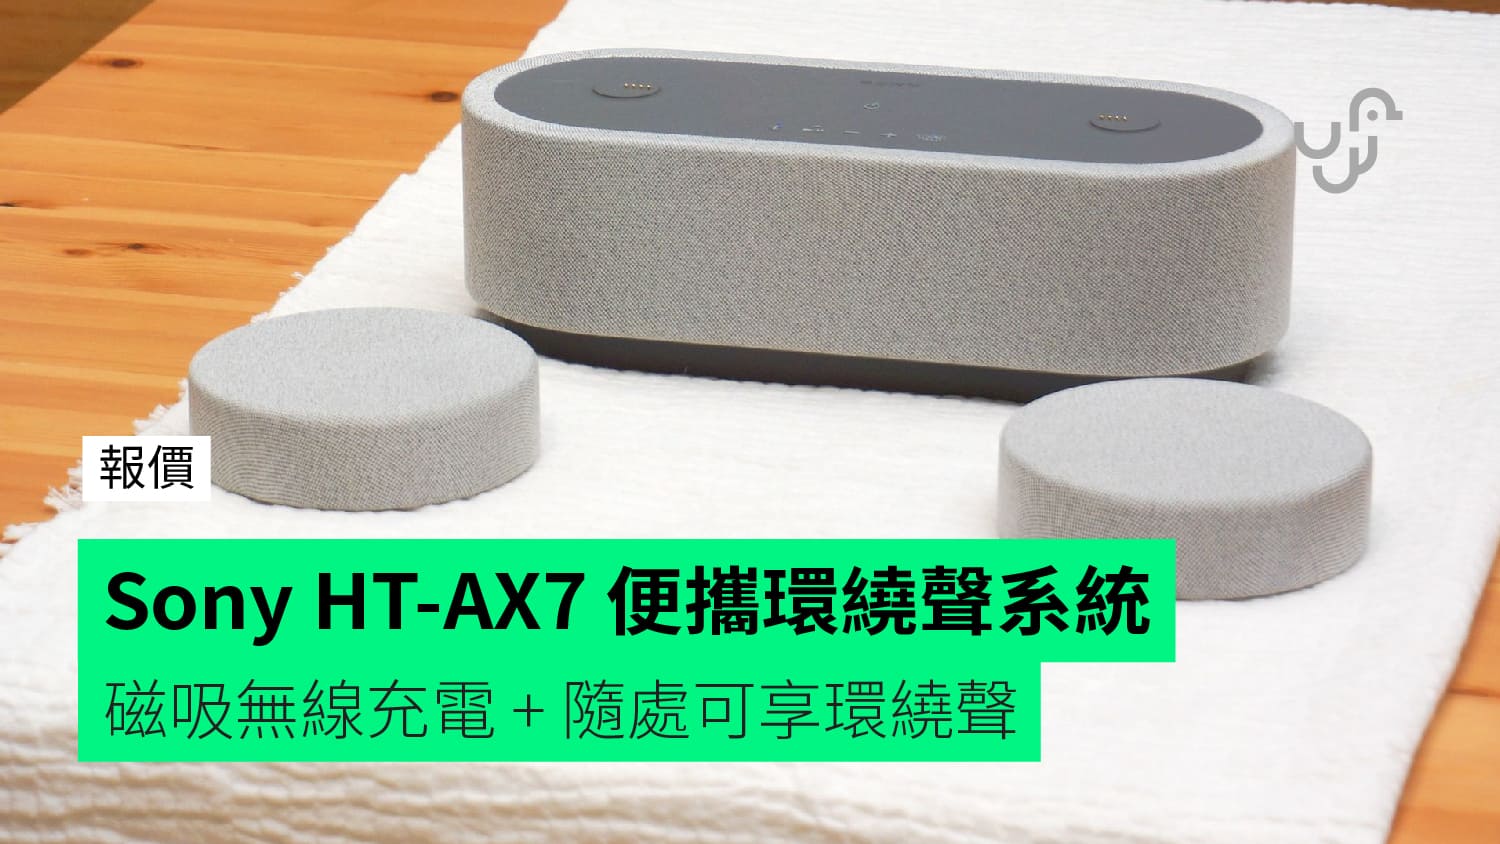 報價】Sony HT-AX7 便攜環繞聲系統 磁吸無線充電+ 隨處可享環繞聲